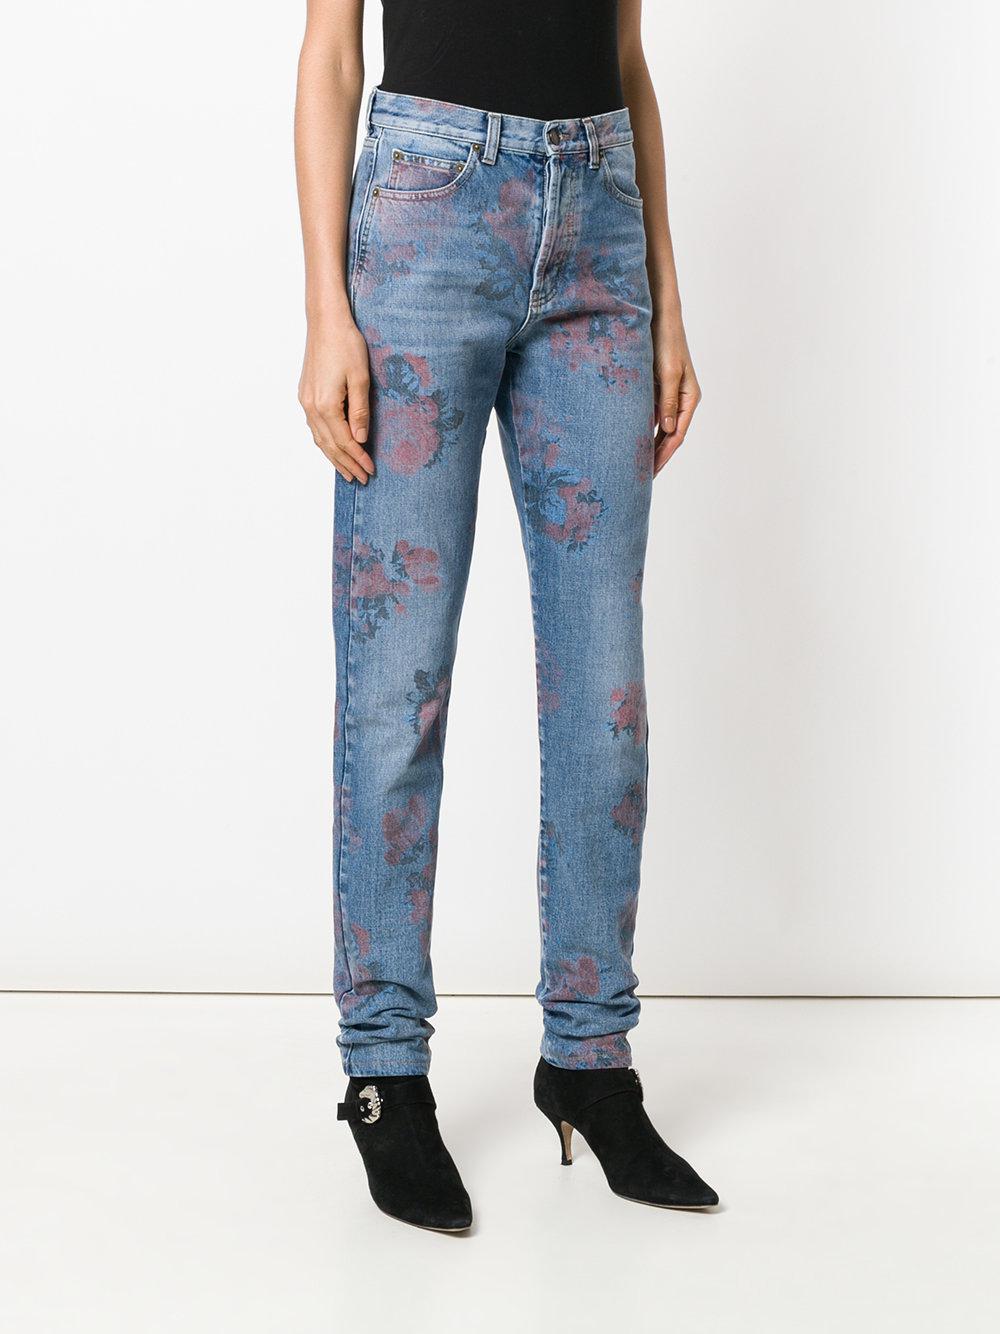 Saint Laurent Floral Print Jeans in Blue | Lyst